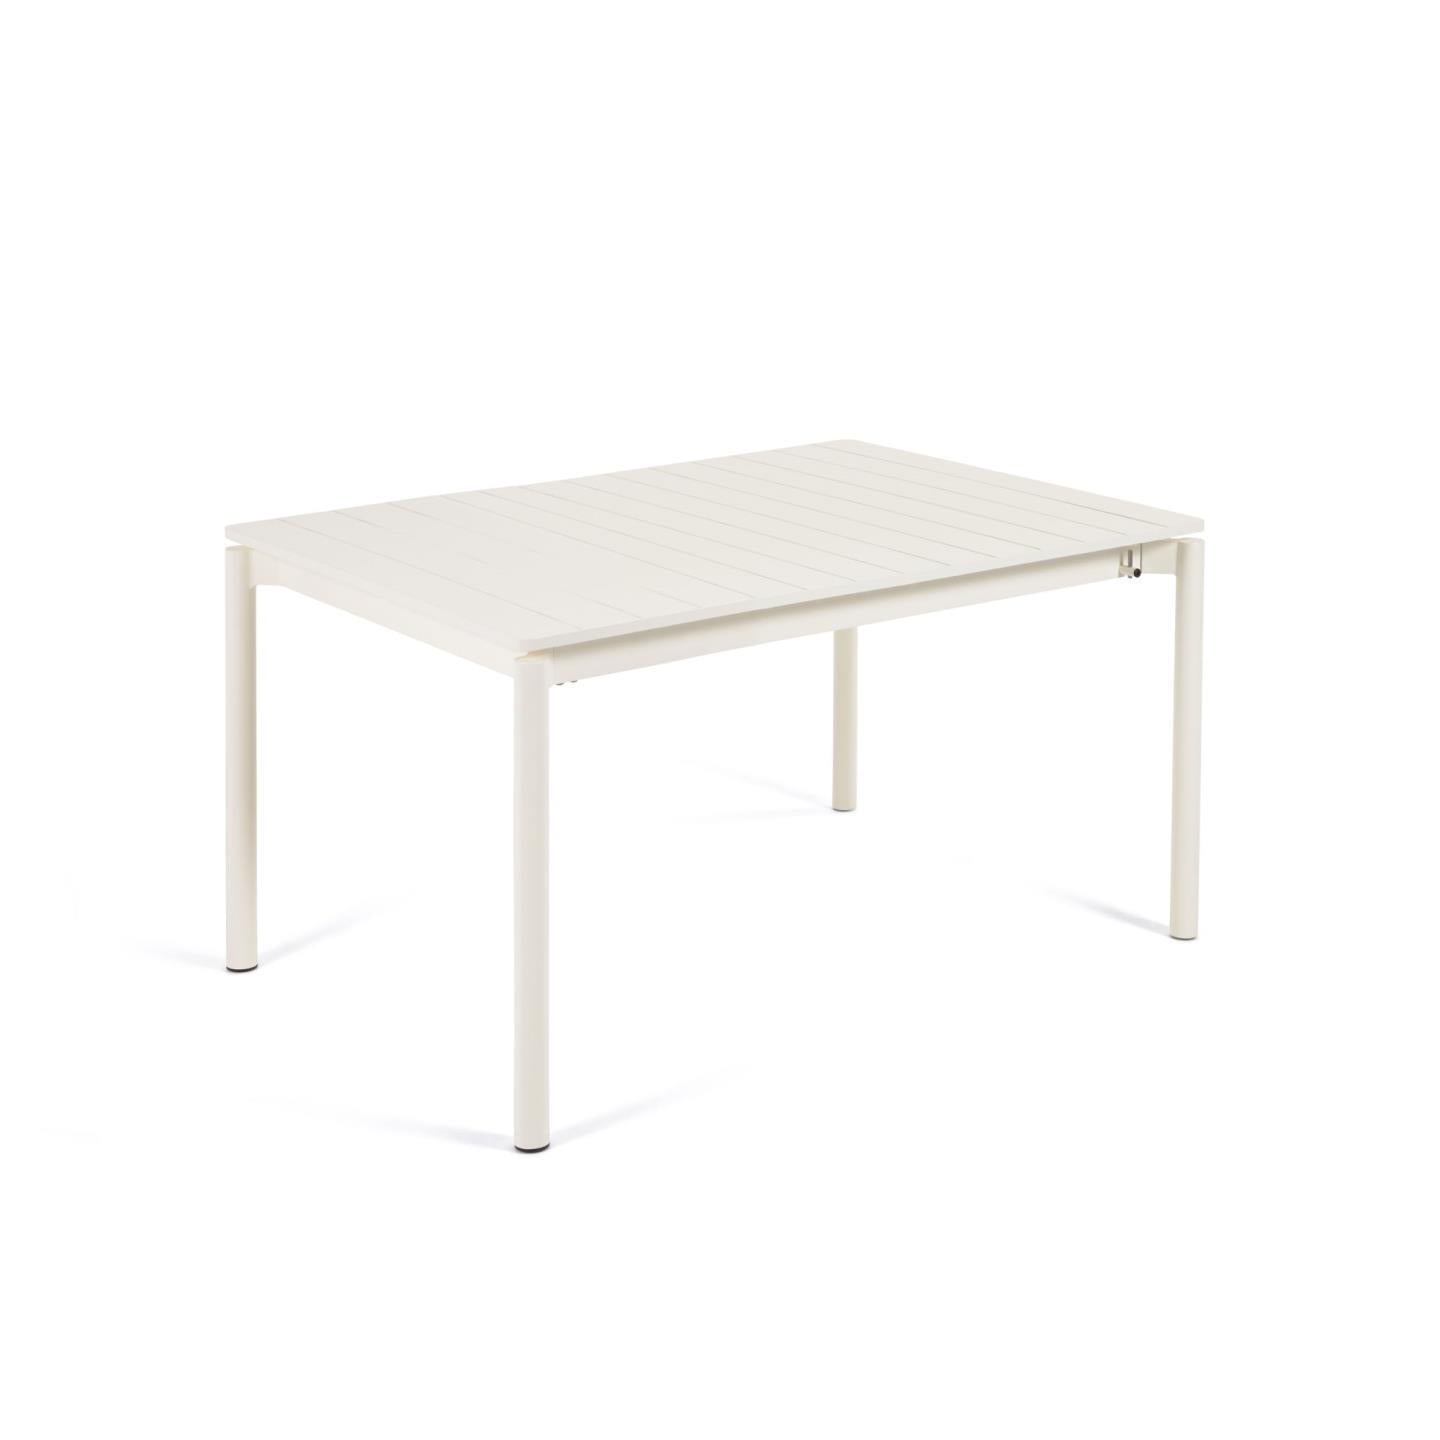 Zaltana kihúzható alumínium kültéri asztal, matt fehér kivitelben 140 (200) x 90 cm